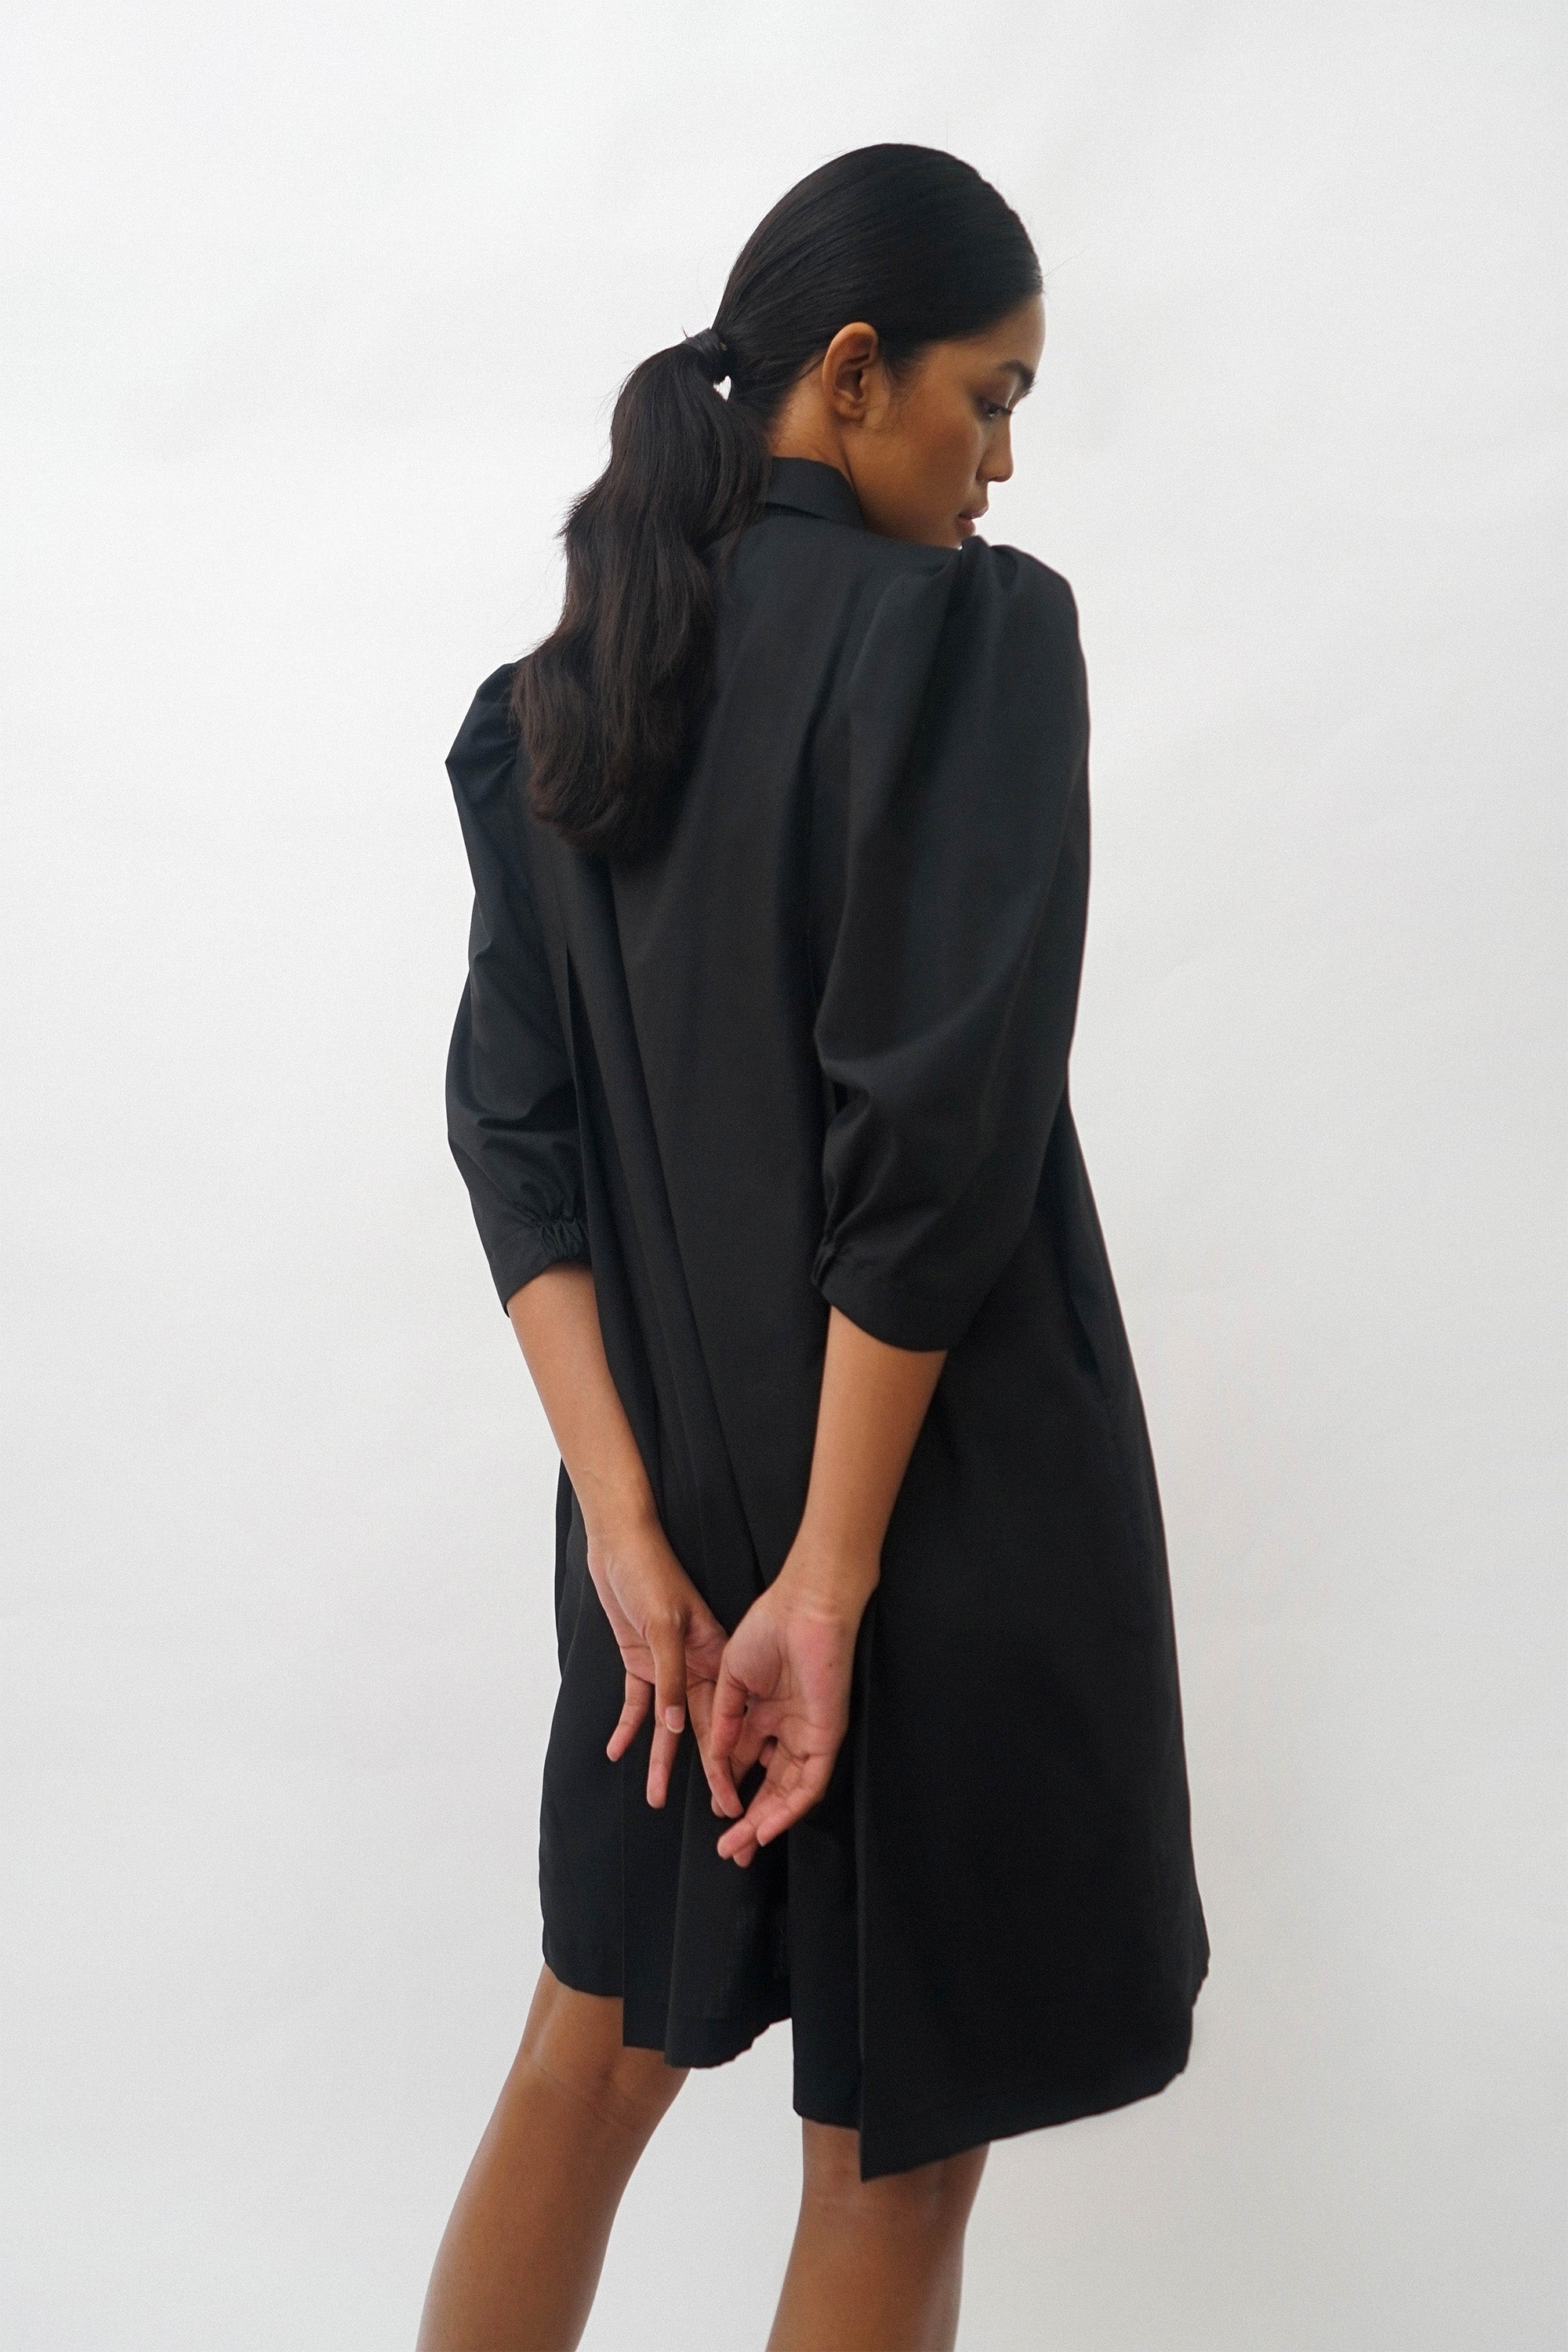 MIWA Dress - Black